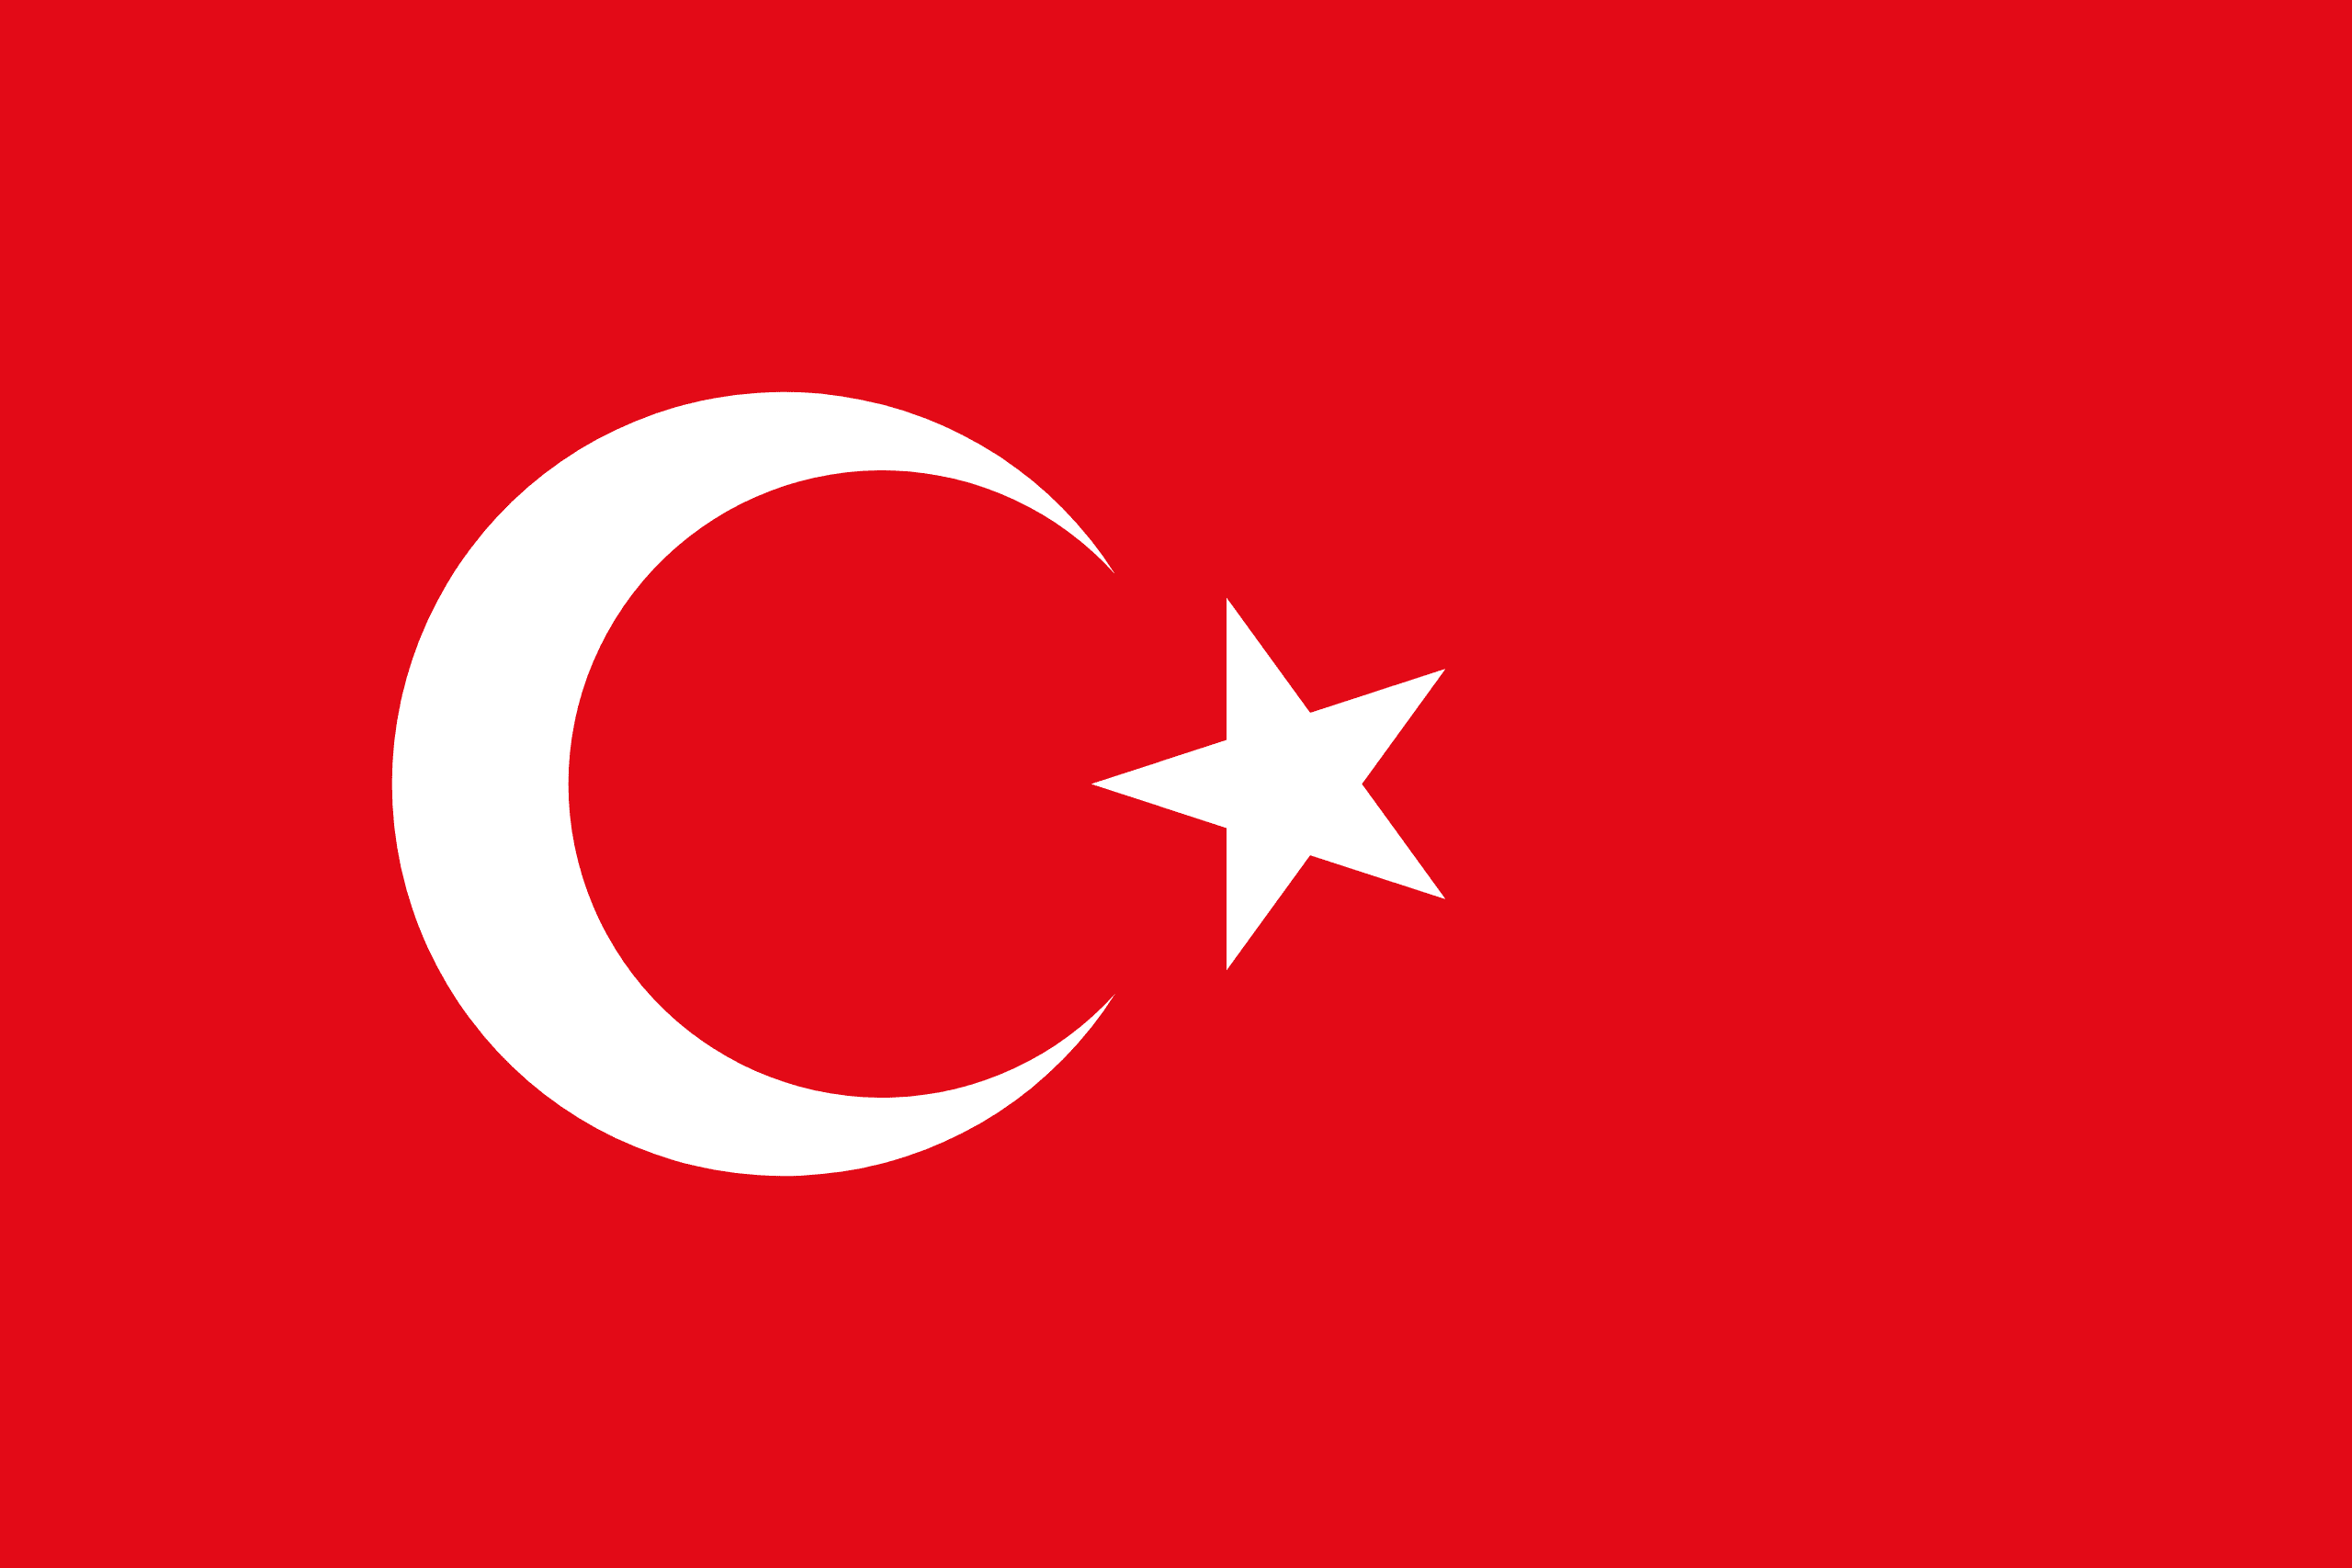 Turkey bans cryptocurrencies